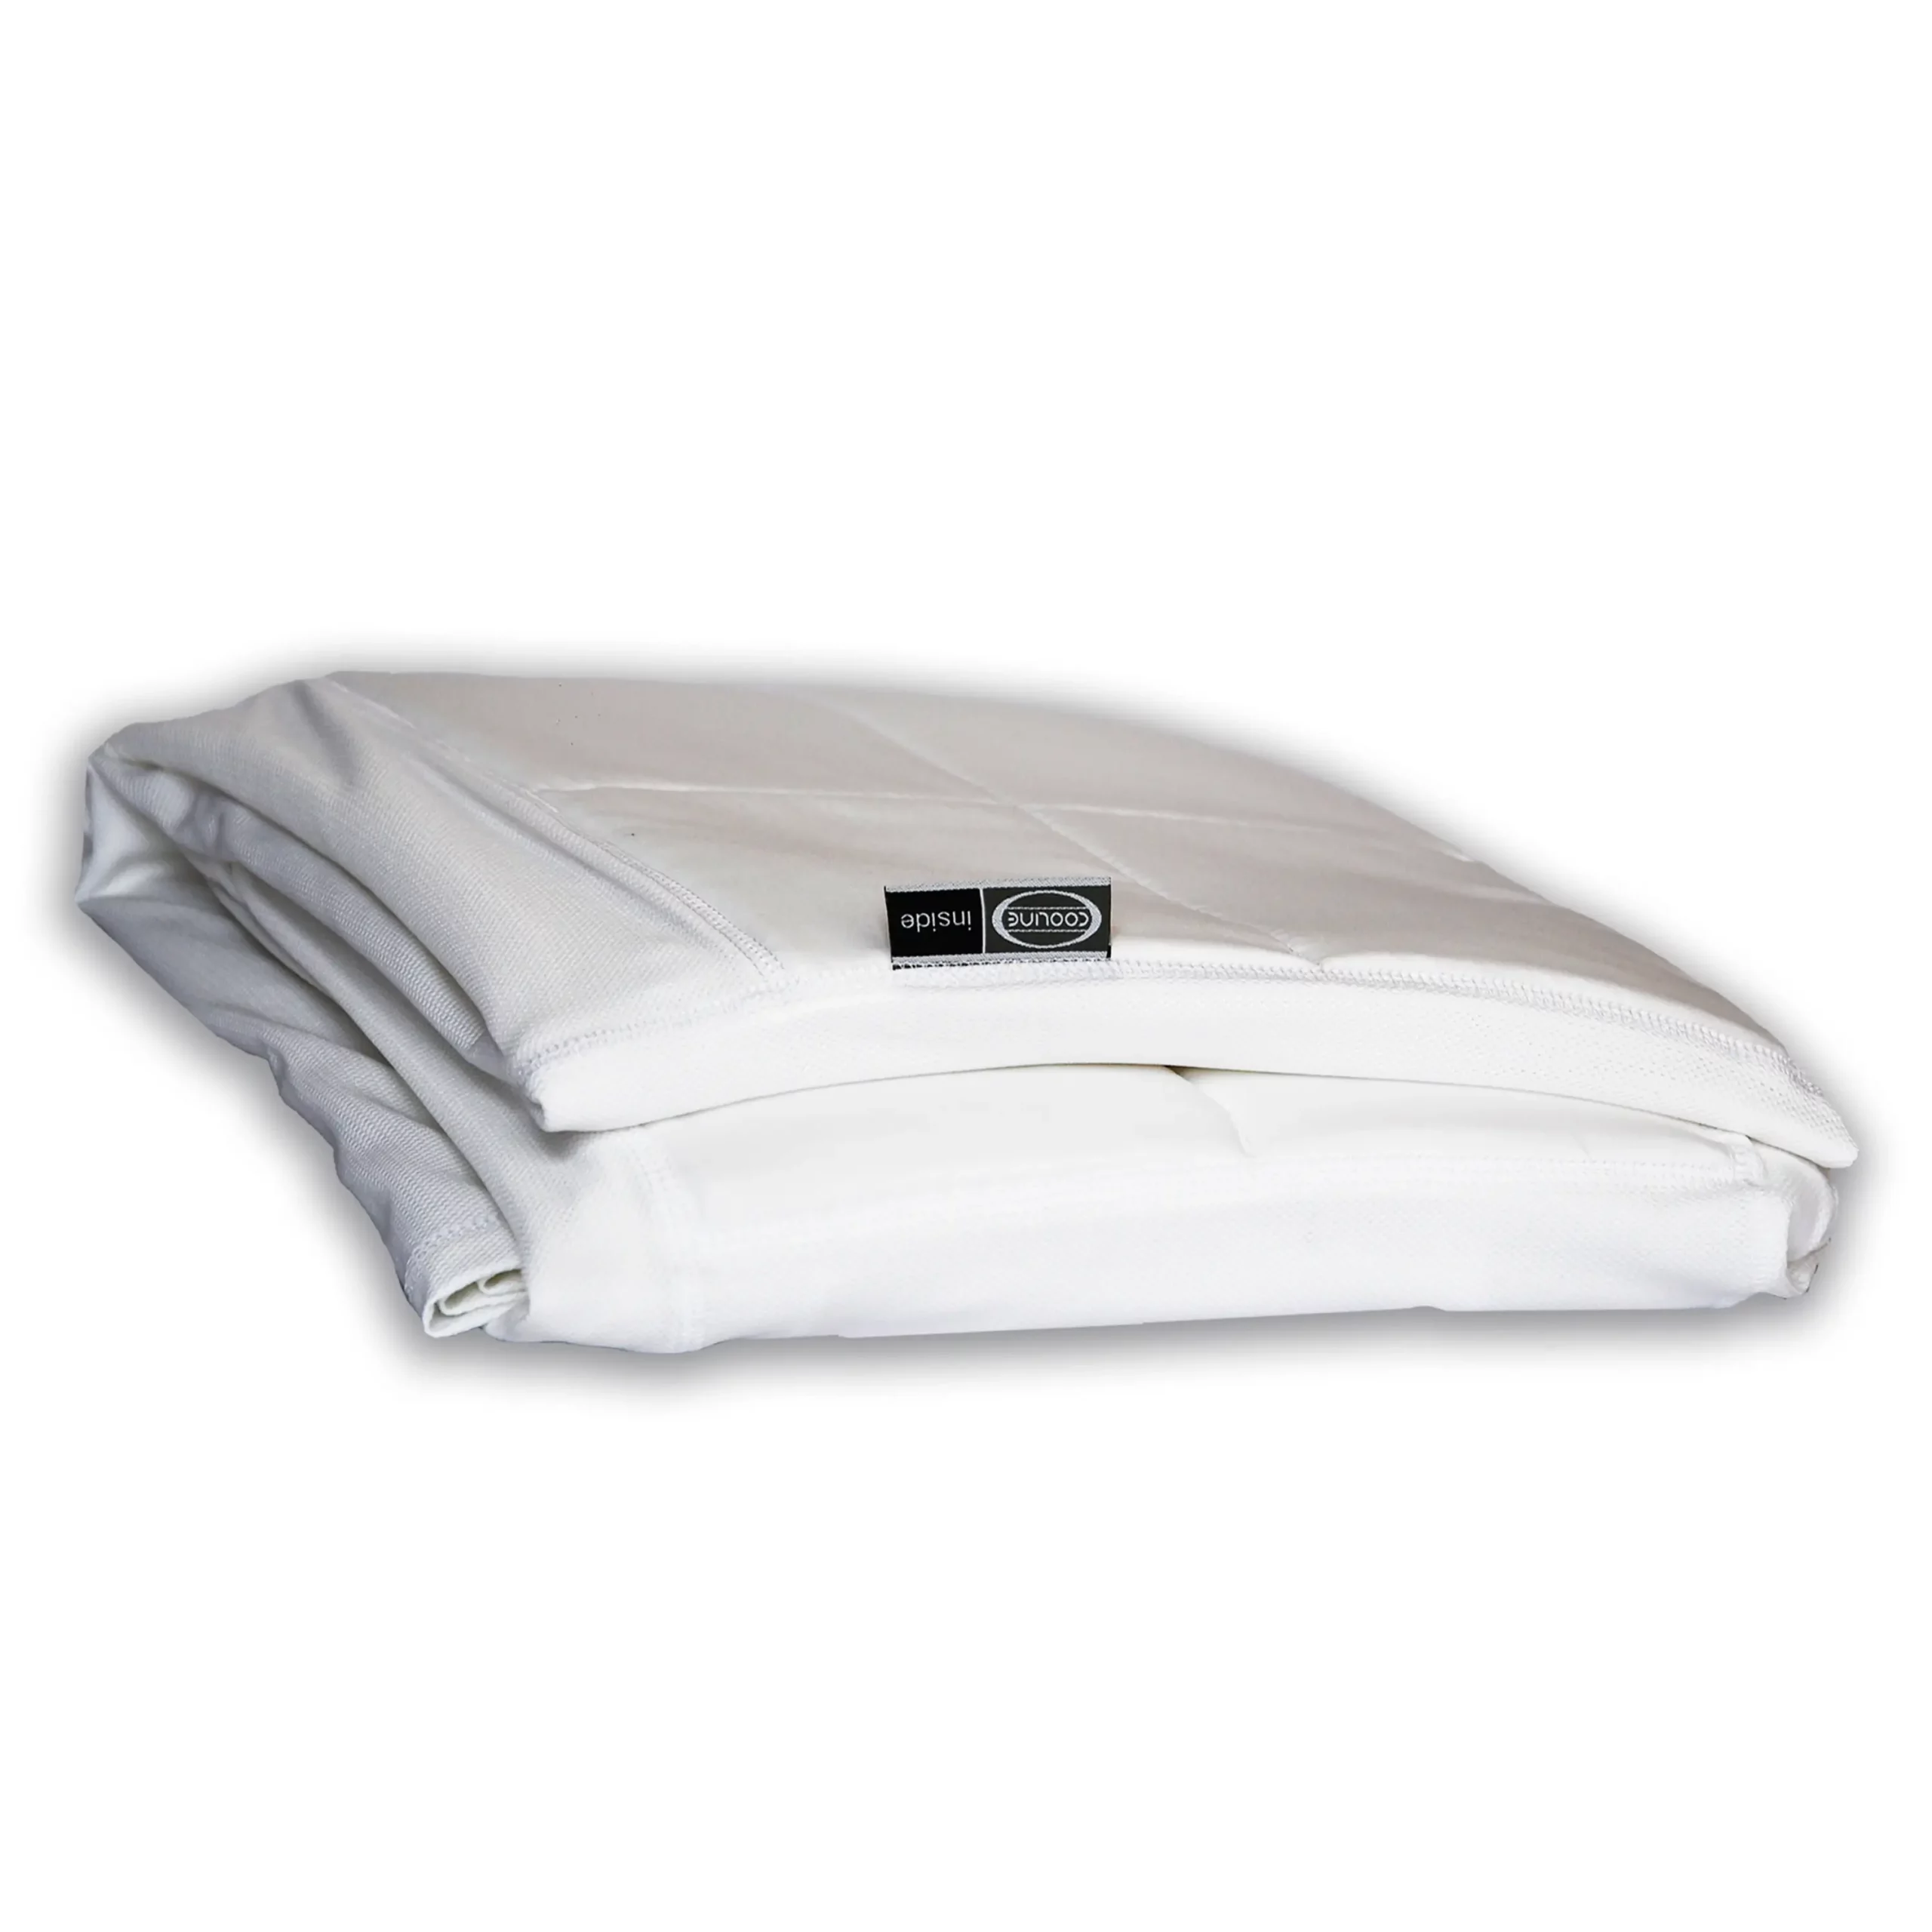 E.COOLINE Kühlende Bettdecke mit 6ßß Watt Kühlleistung in weiß - zusammengefaltet